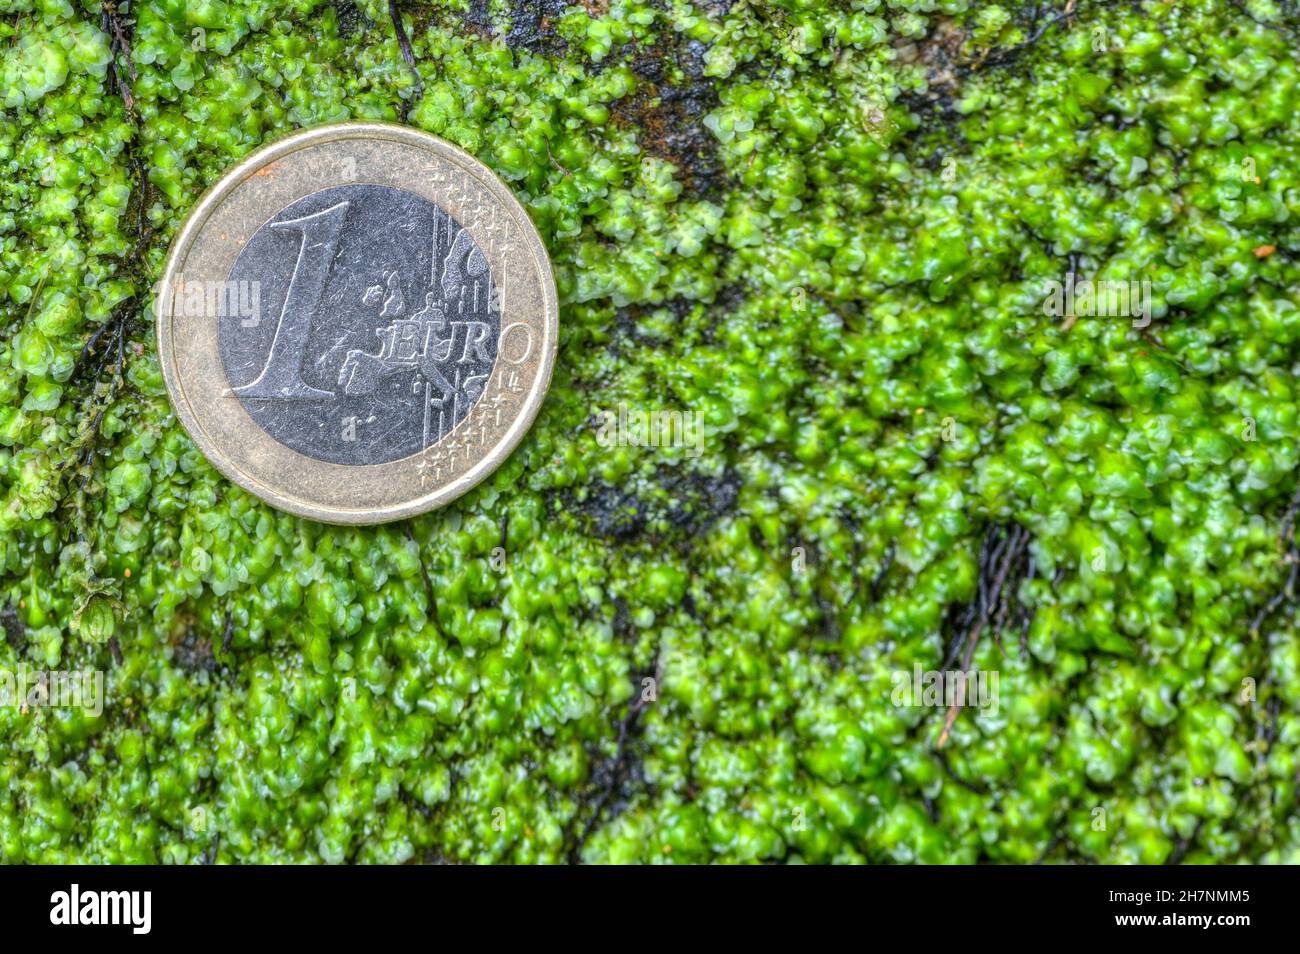 Una moneta da euro giace sul muschio verde. Quanto denaro costerà alle economie europee la transizione verso l'energia verde? Foto Stock